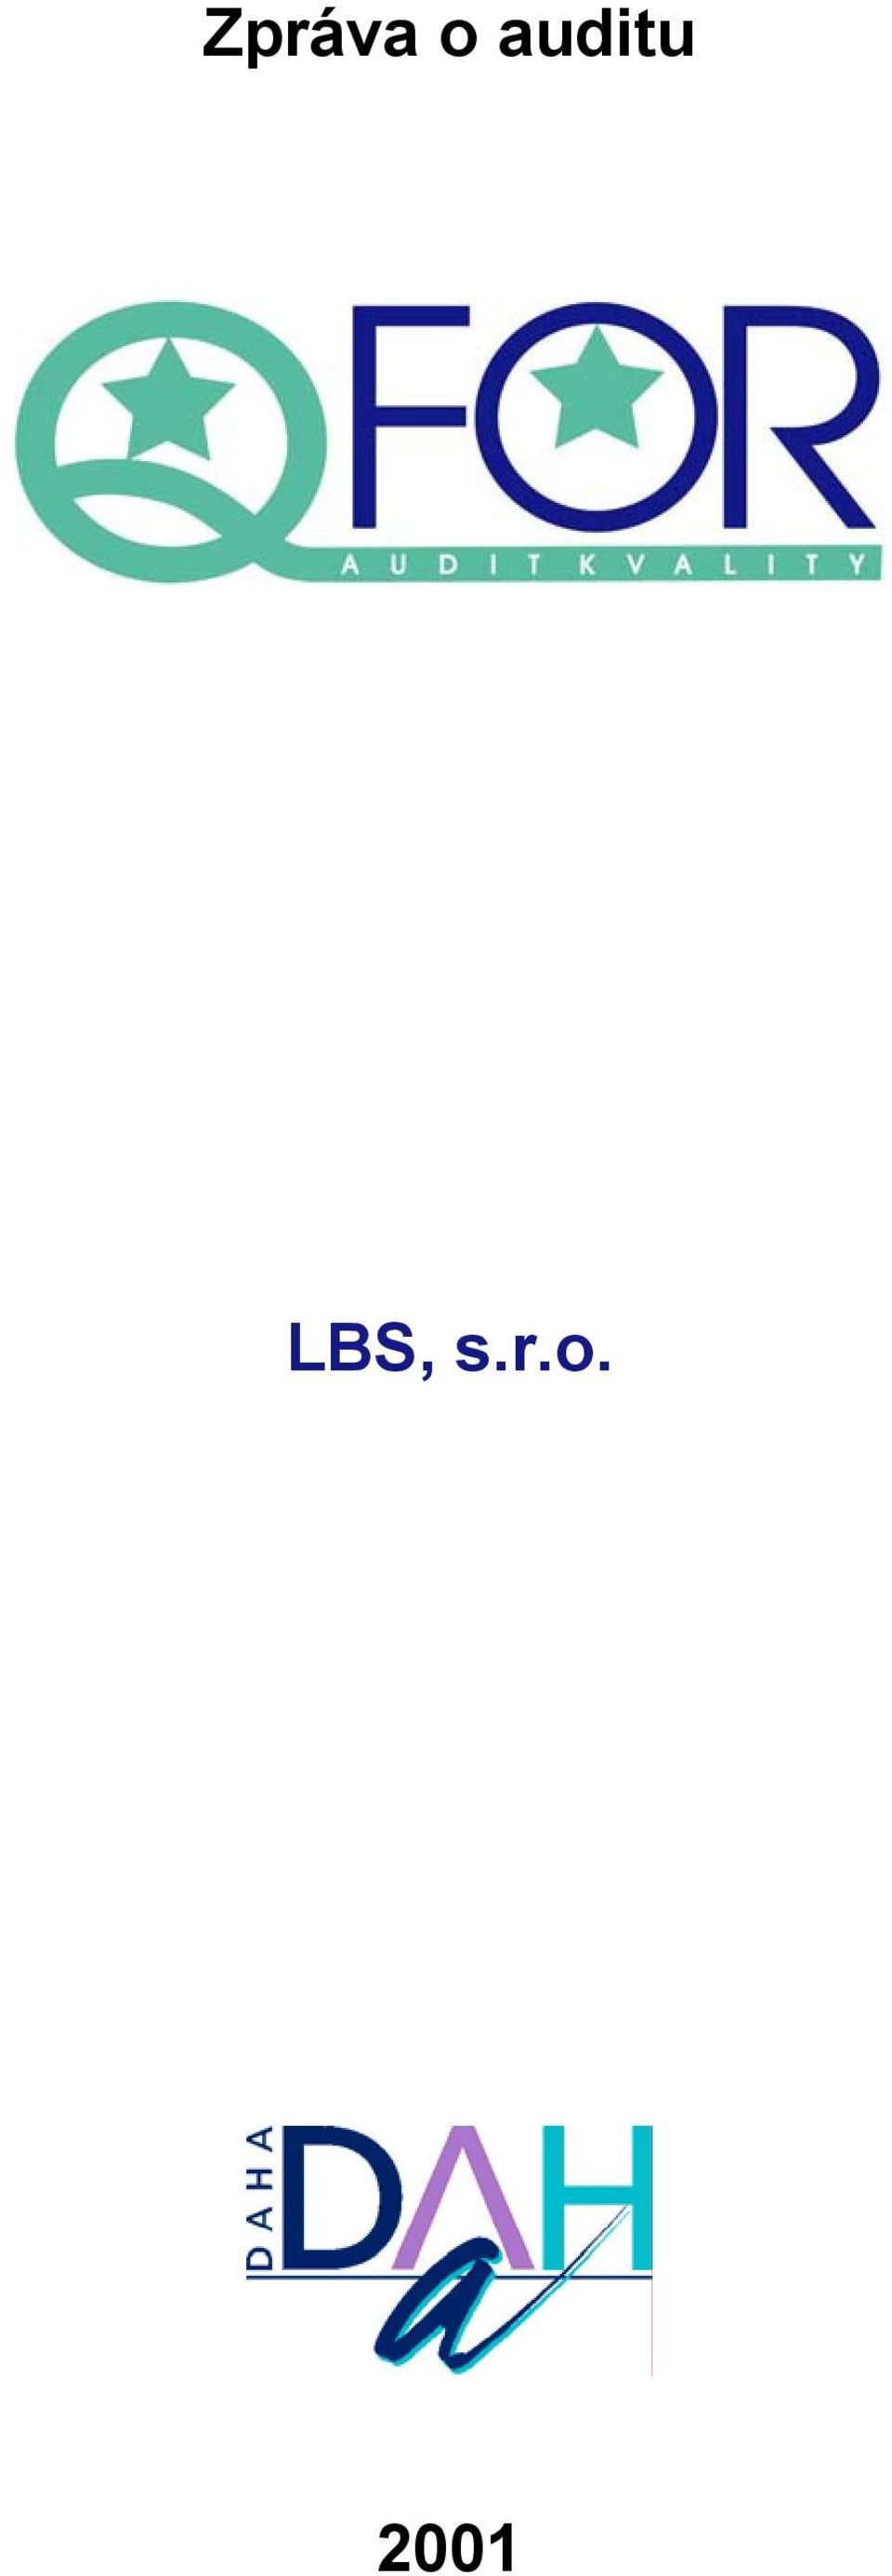 LBS, s.r.